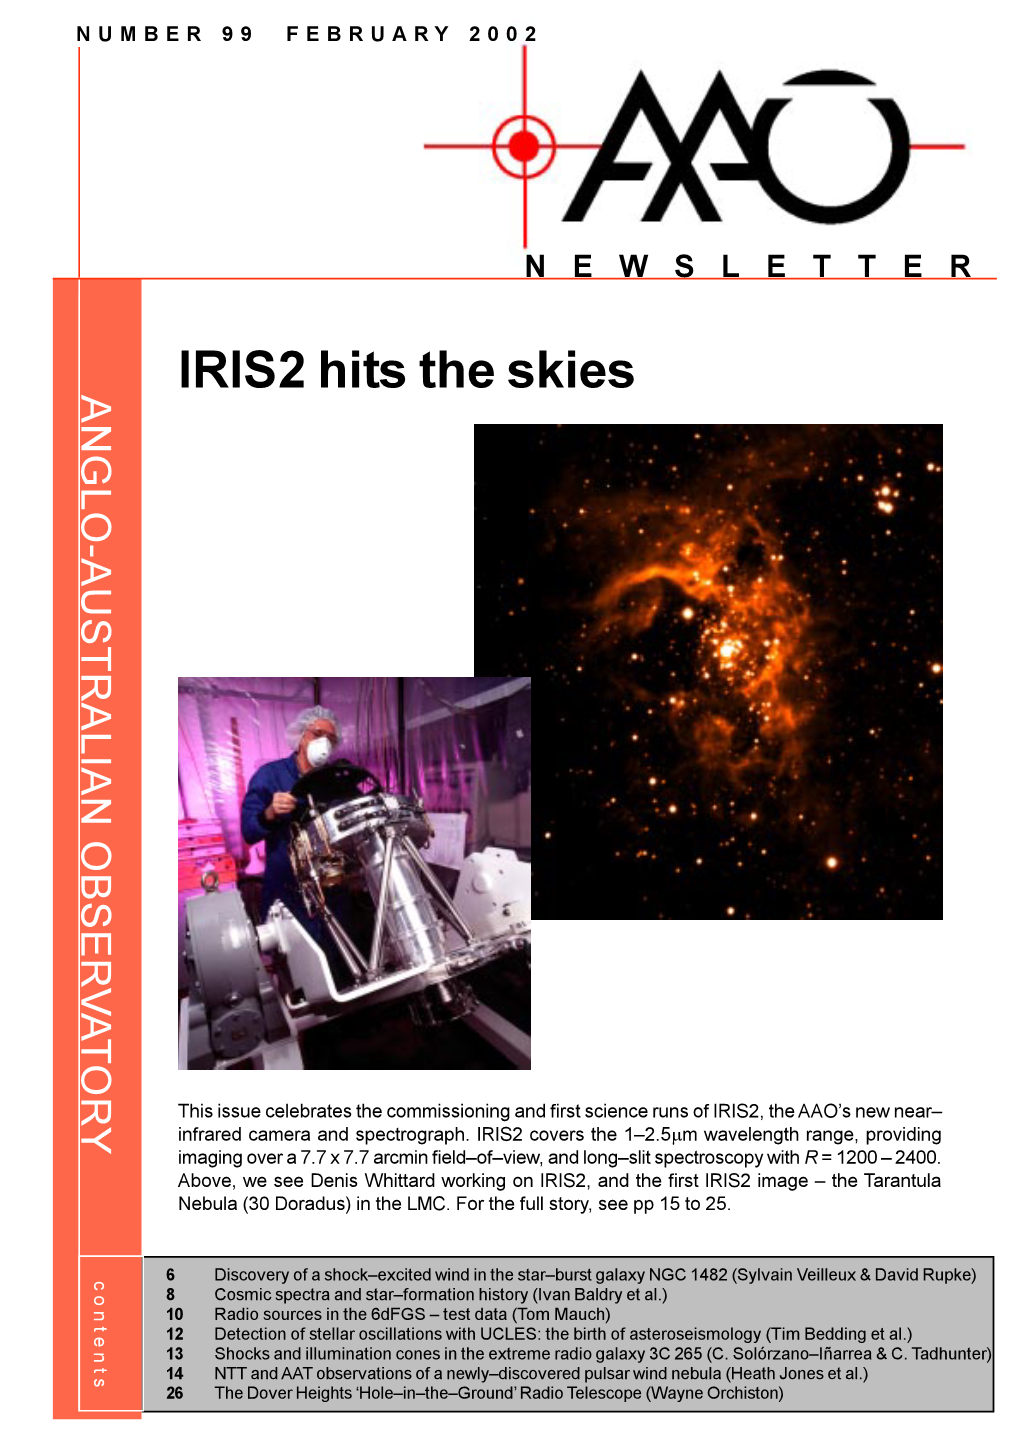 IRIS2 Hits the Skies the Hits IRIS2 14 26 6 8 10 12 13